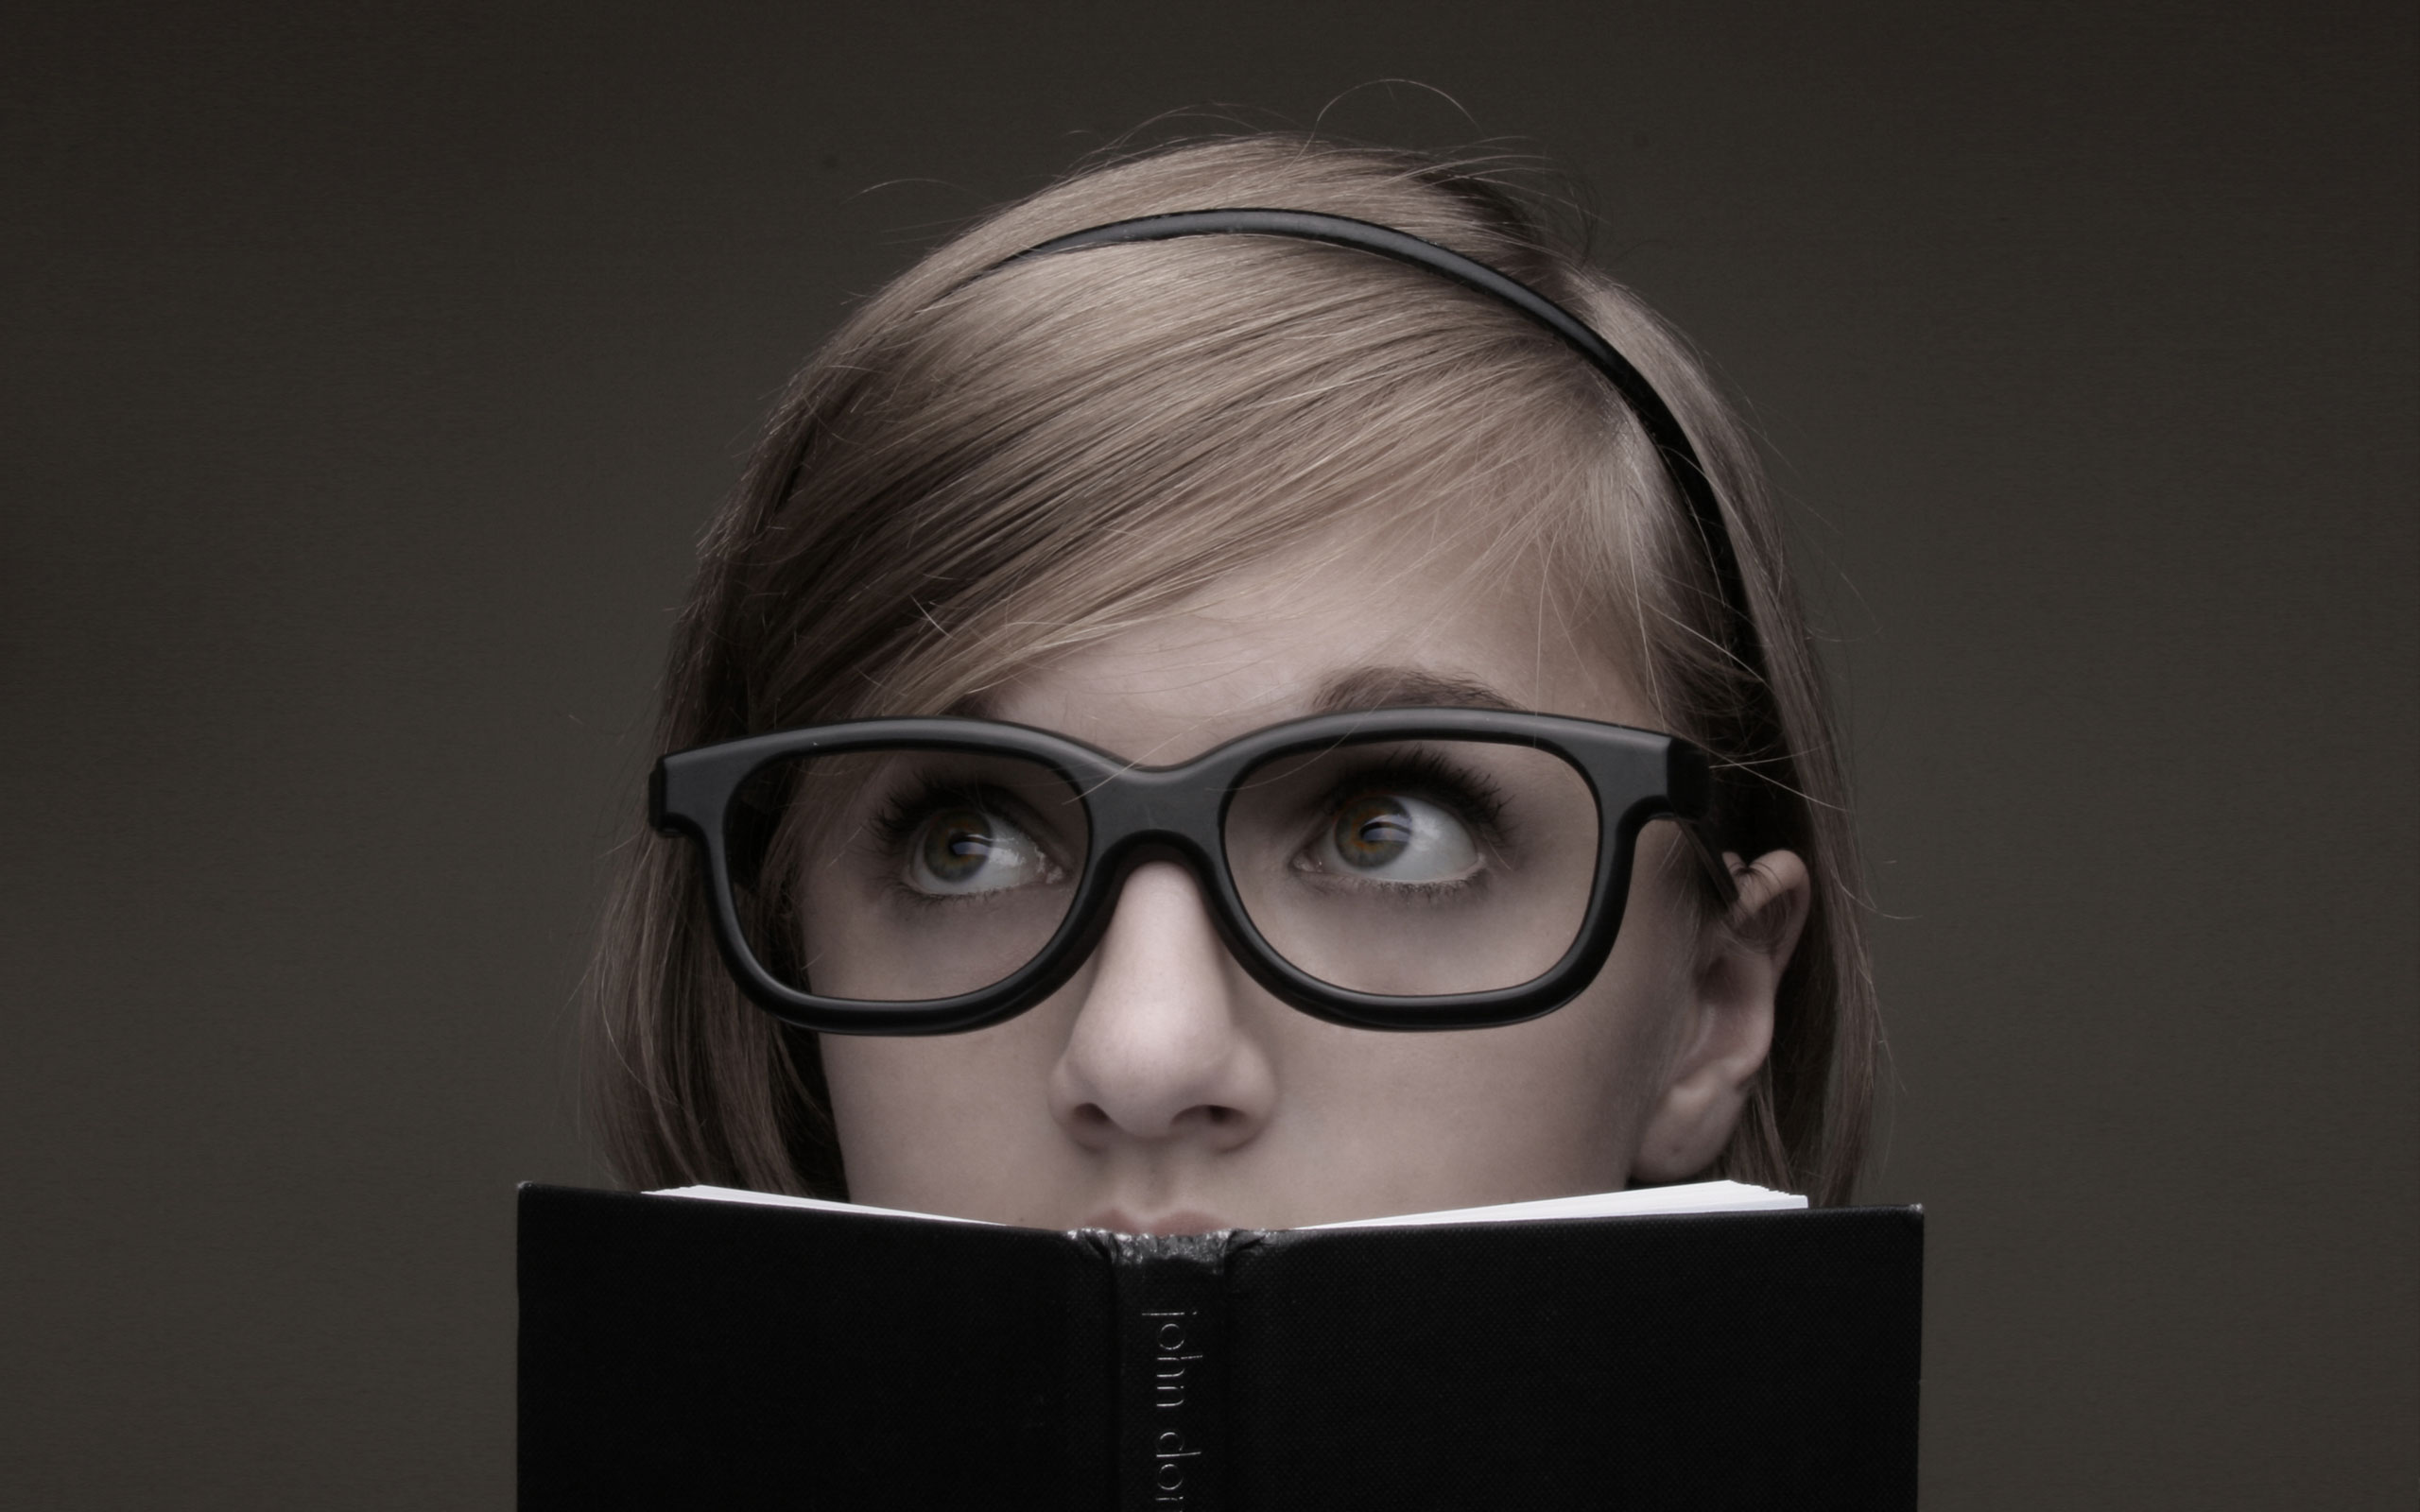 women, glasses, books, girls with glasses - desktop wallpaper